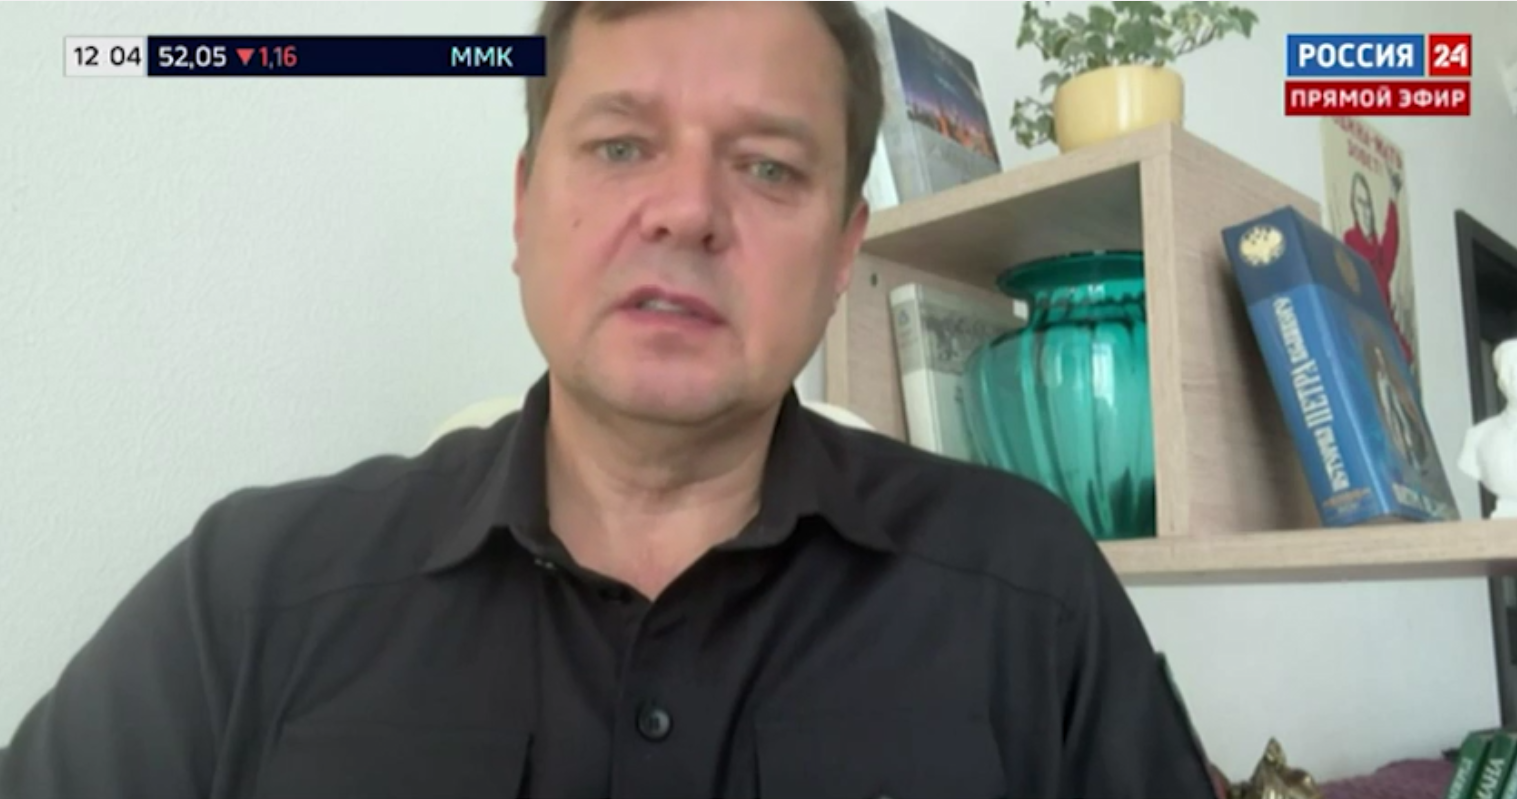 Гауляйтер Балицький в ефірі пропагандистського каналу